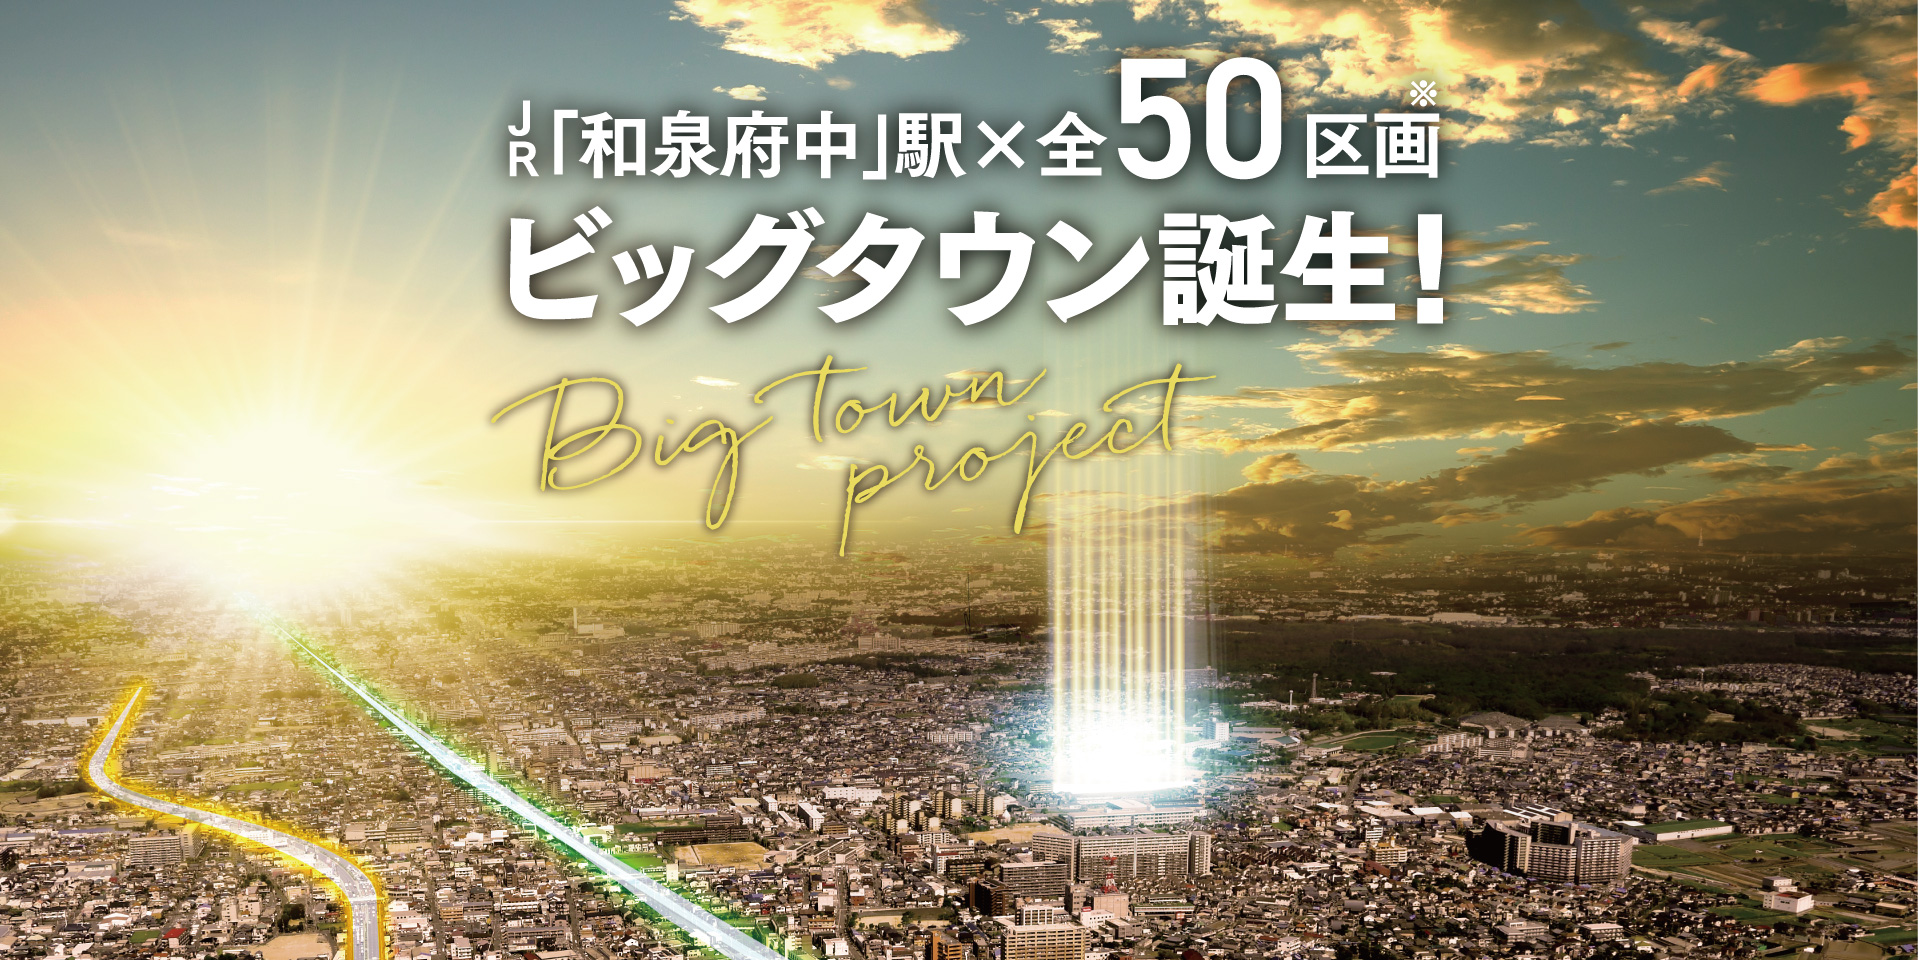 快速停車駅 「和泉府中」生活圏内に50区画のビッグタウンが誕生します！